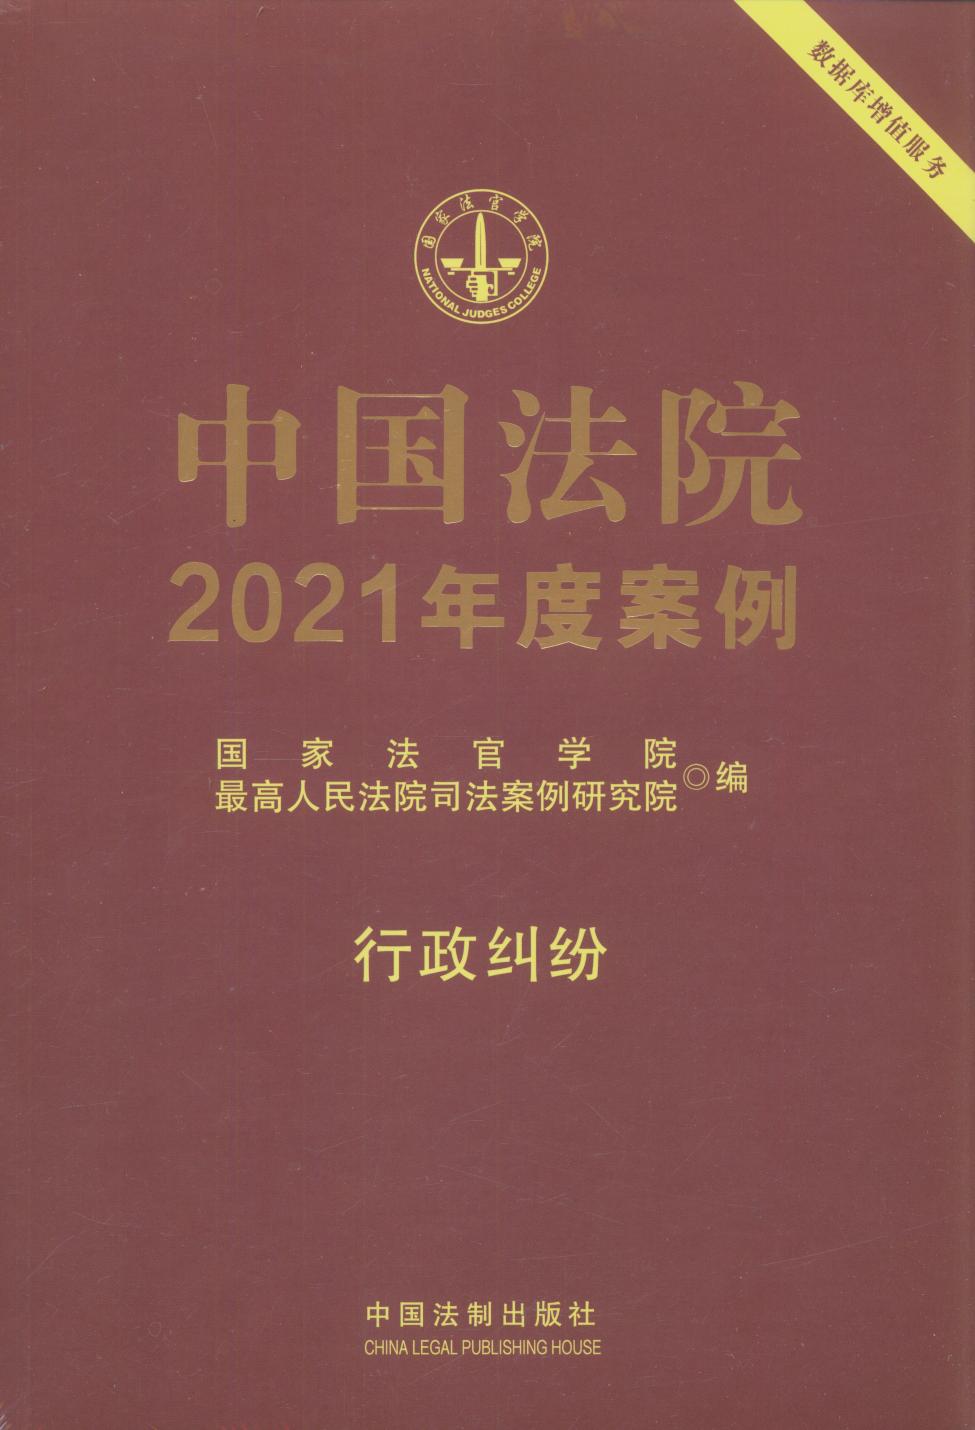 中国法院2021年度案例【18】行政纠纷